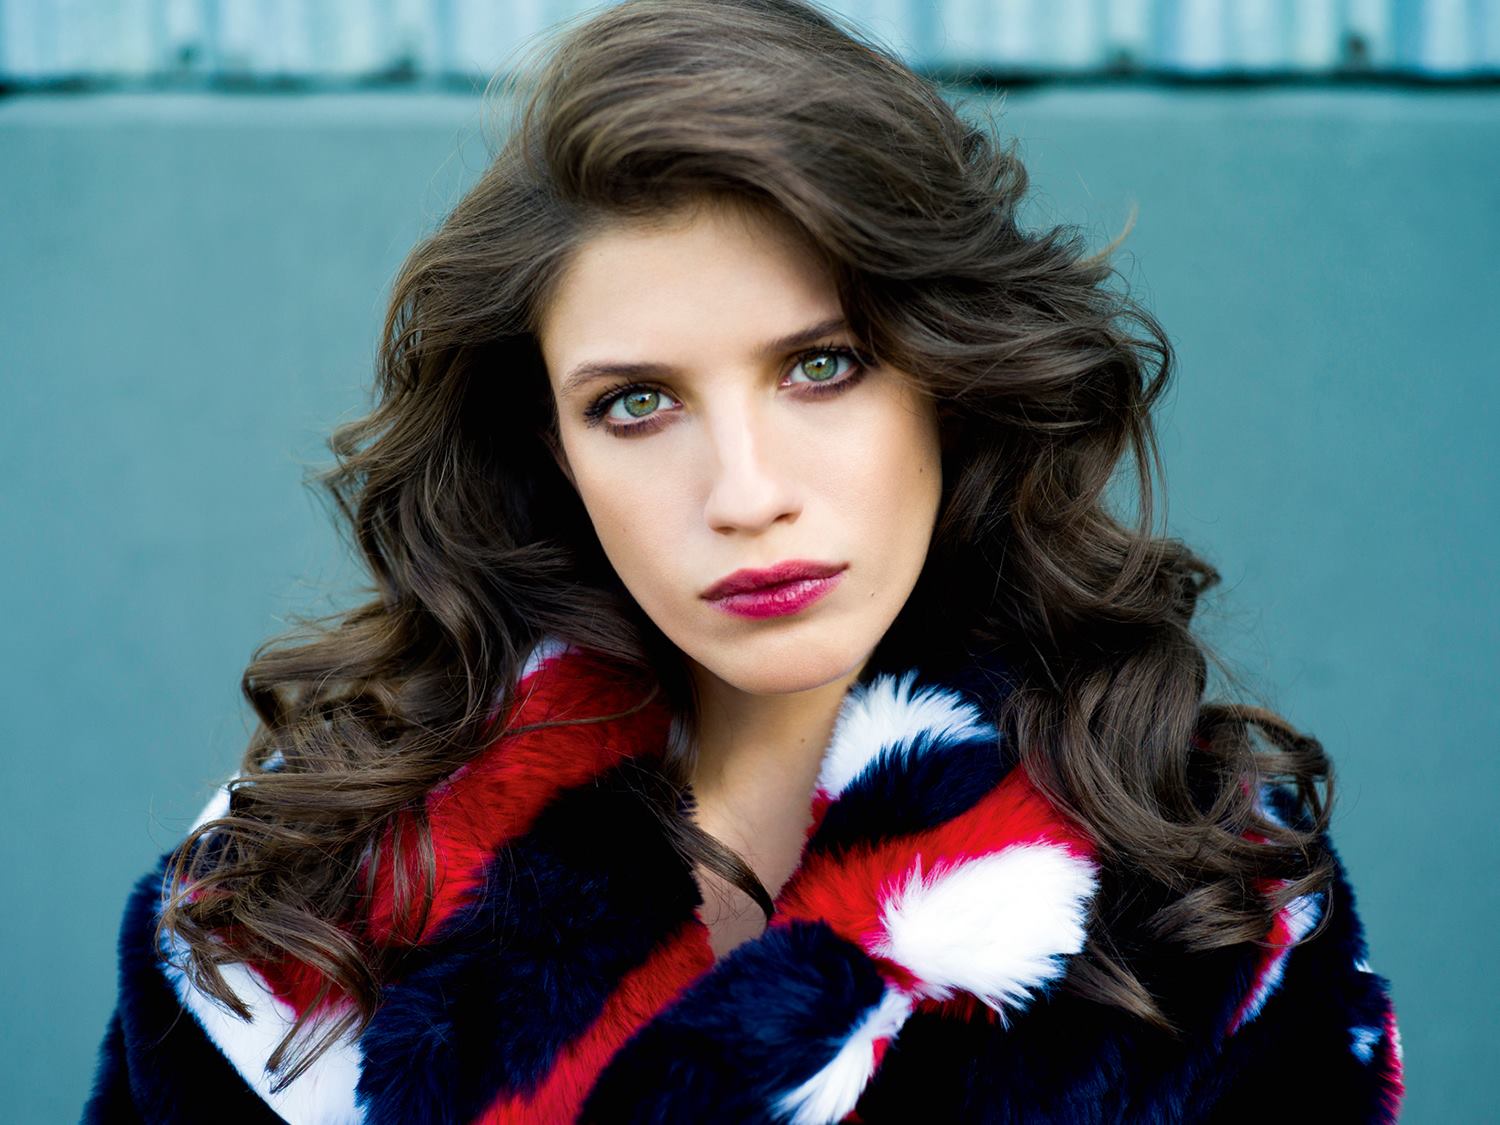 Anna Chipovskaya Women Russian Brunette Russian Women Singer Actress Green Eyes Lipstick Long Hair 1500x1125